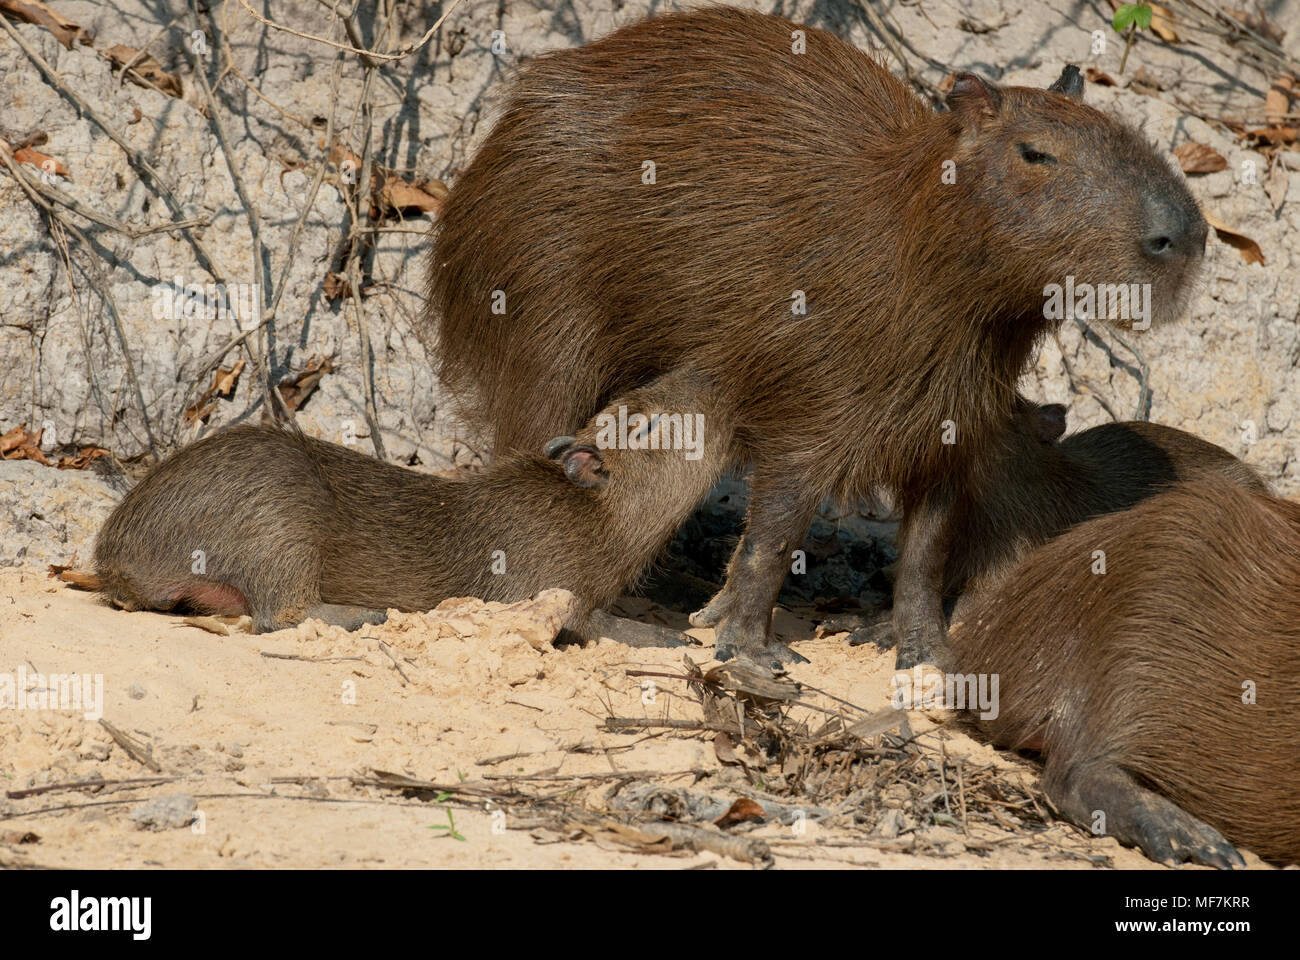 Capybara family in the Pantanal in southern Brazil; young capybaras nursing Stock Photo